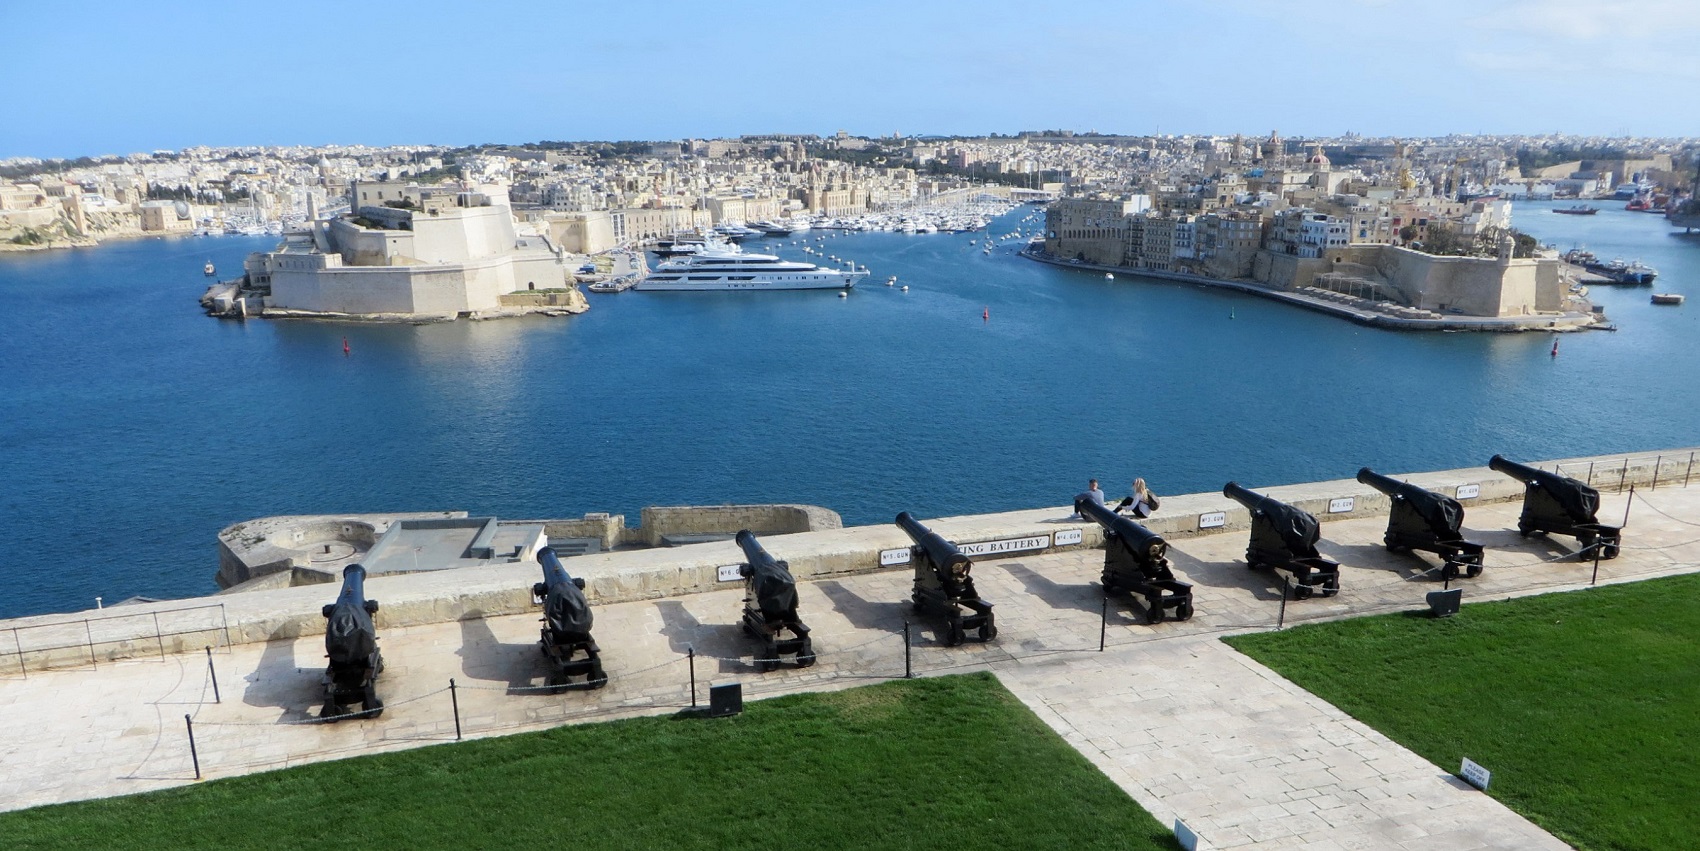 Malta Valletta religious